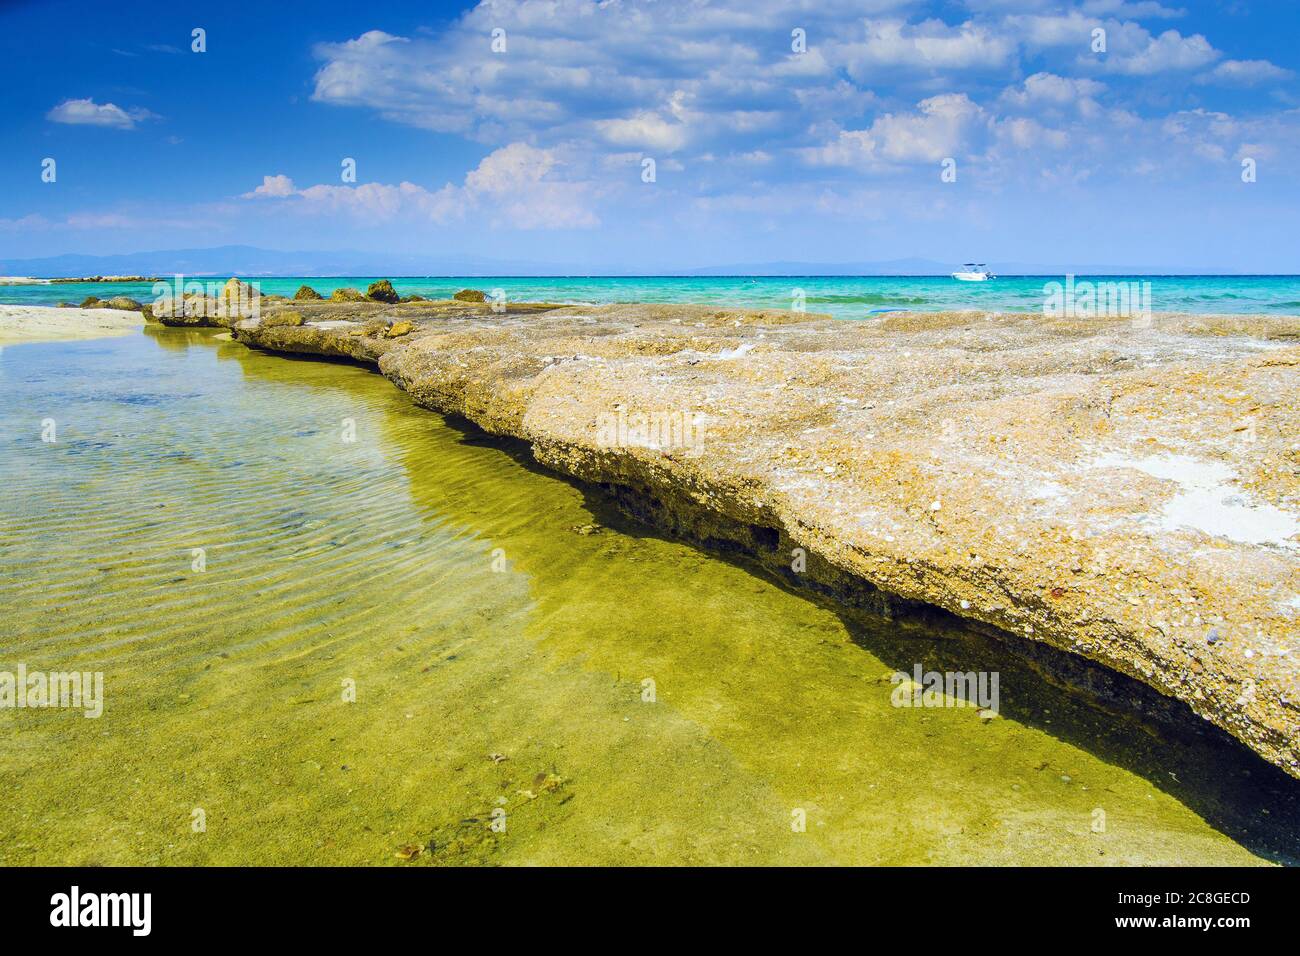 Farbenfroher tropischer Strand mit riesigen Felsen Stockfoto